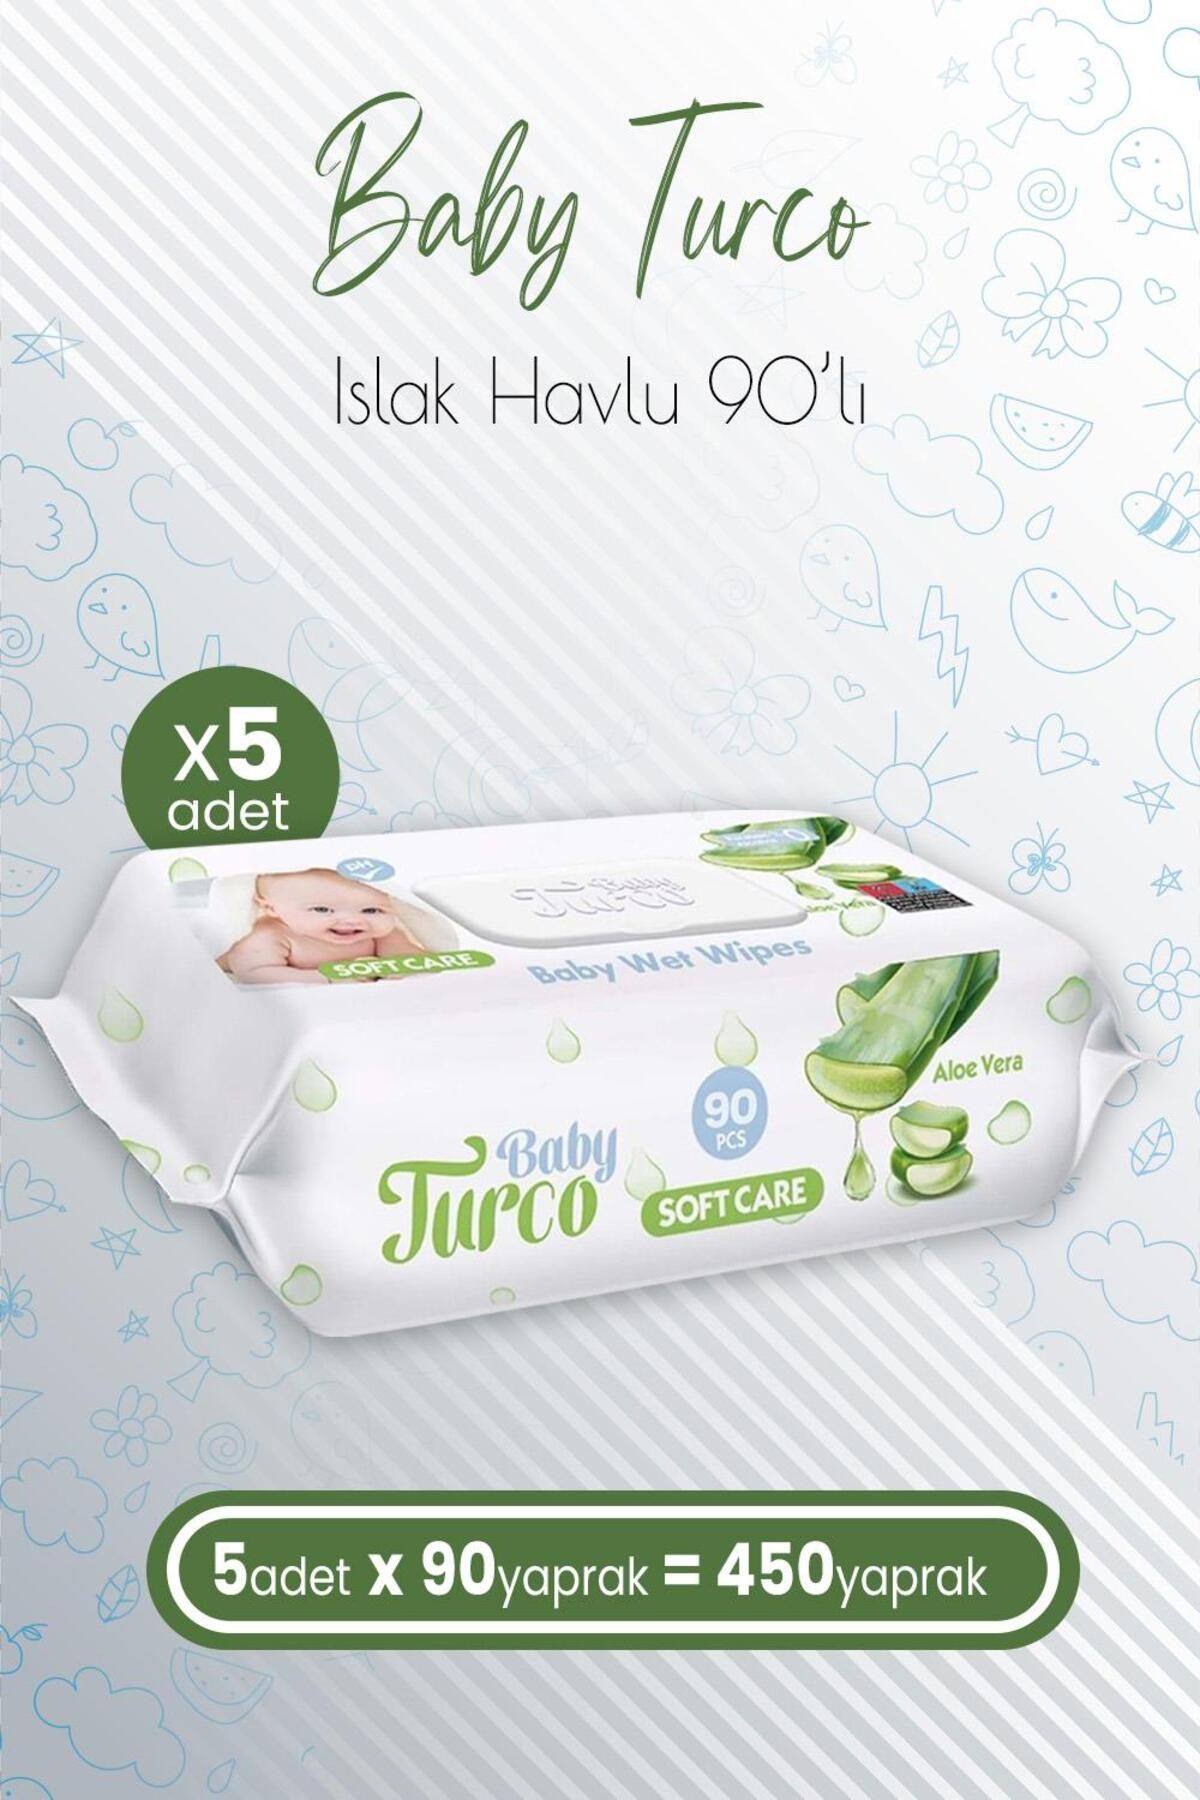 Baby Turco Soft Care Bebek Islak Havlu Aloe Vera 90' Lı X 5 Adet (450 YAPRAK)